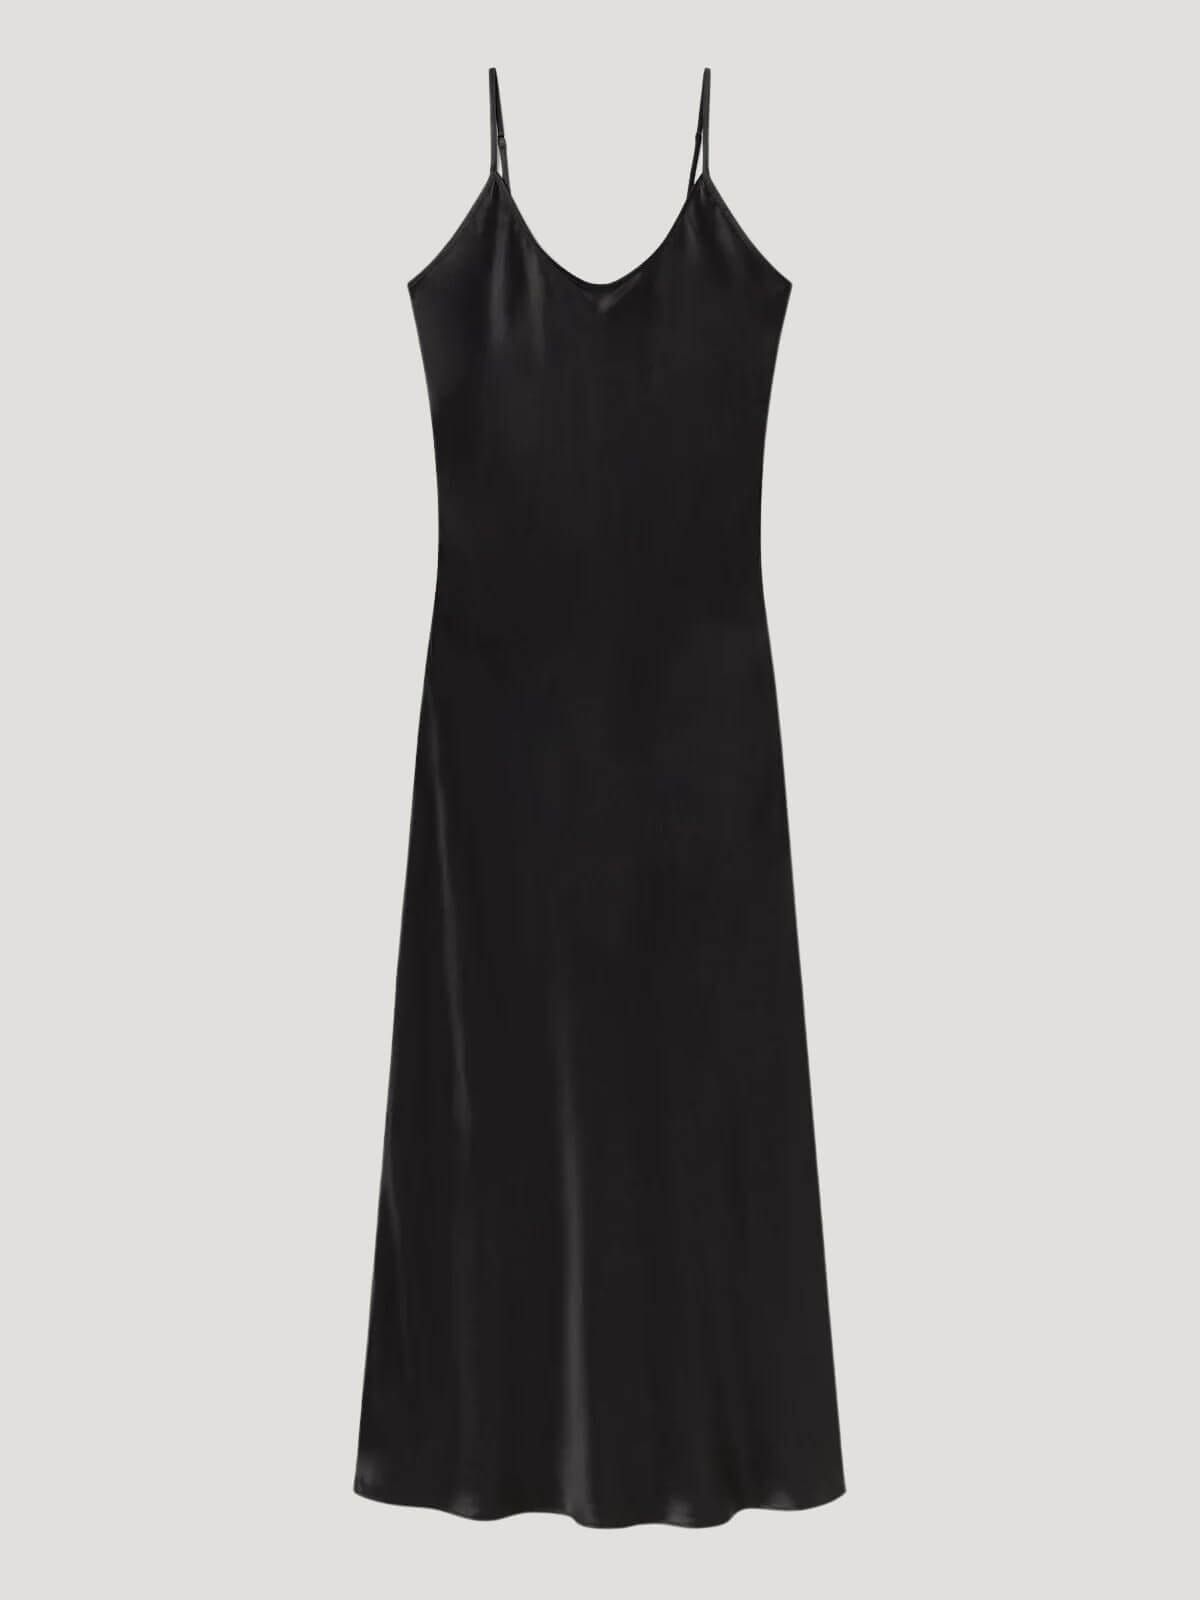 Silk Laundry Slip Dress Smoke Grey Size AU 6